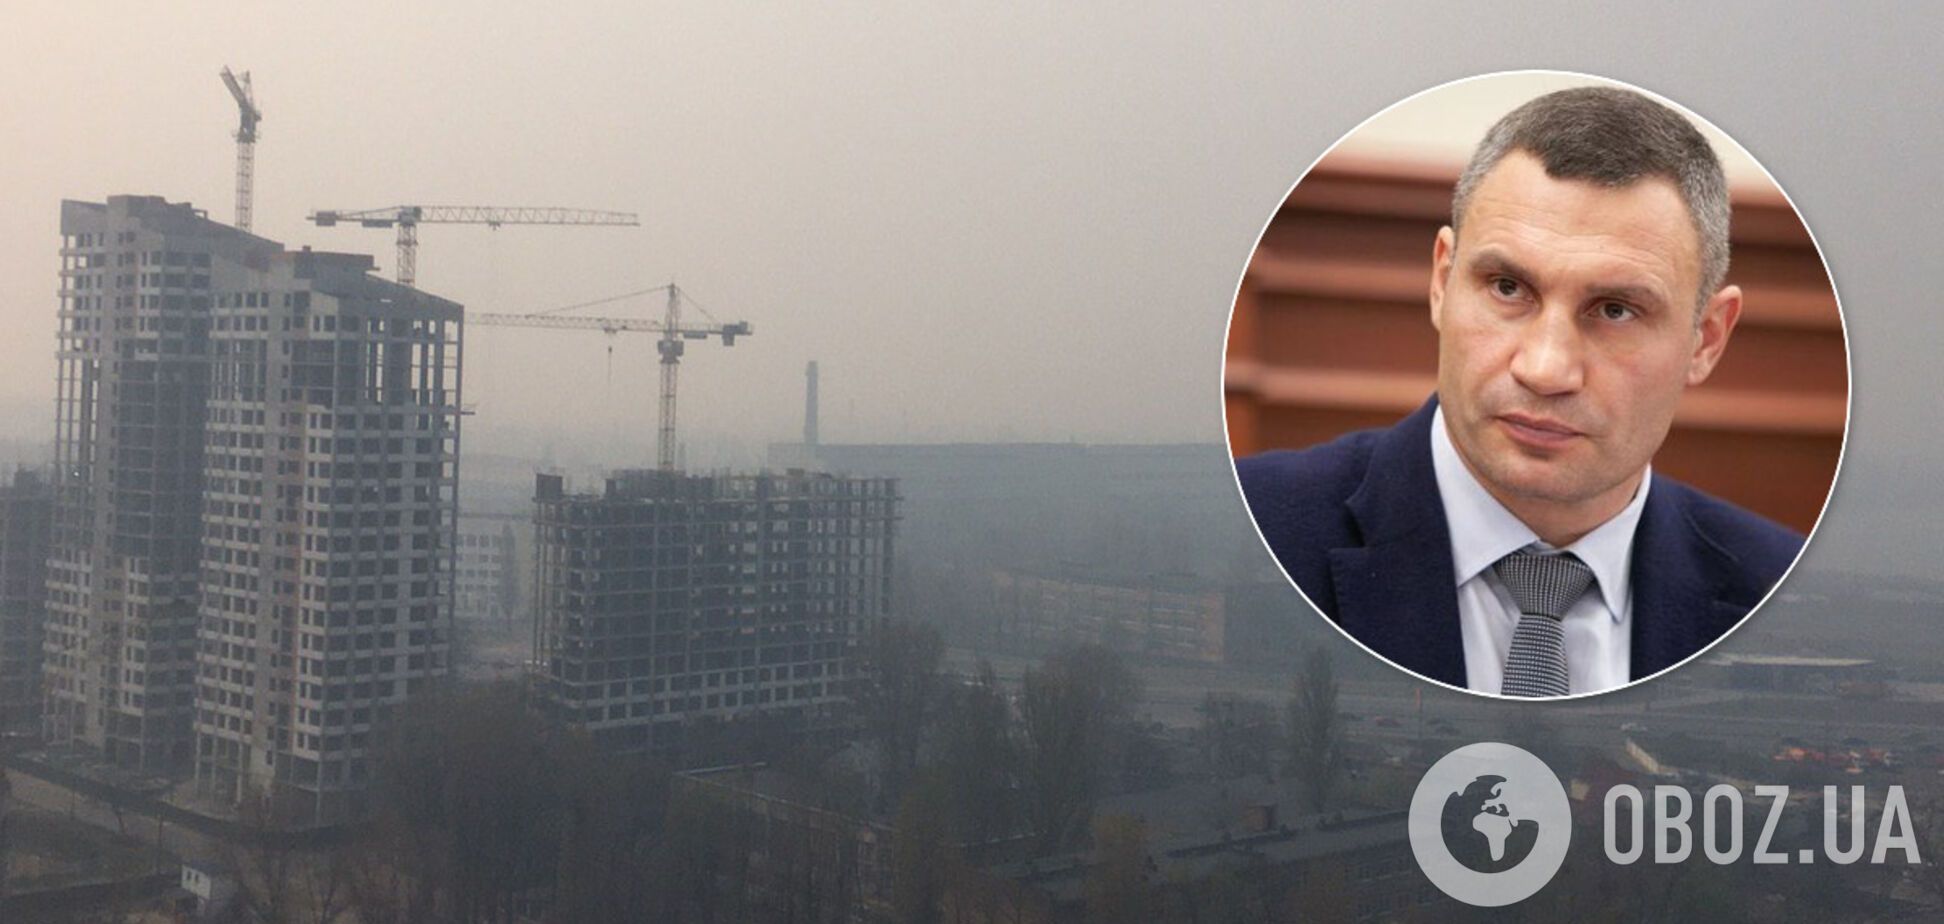 Кличко рассказал о ситуации с грязным воздухом в Киеве. Иллюстрация